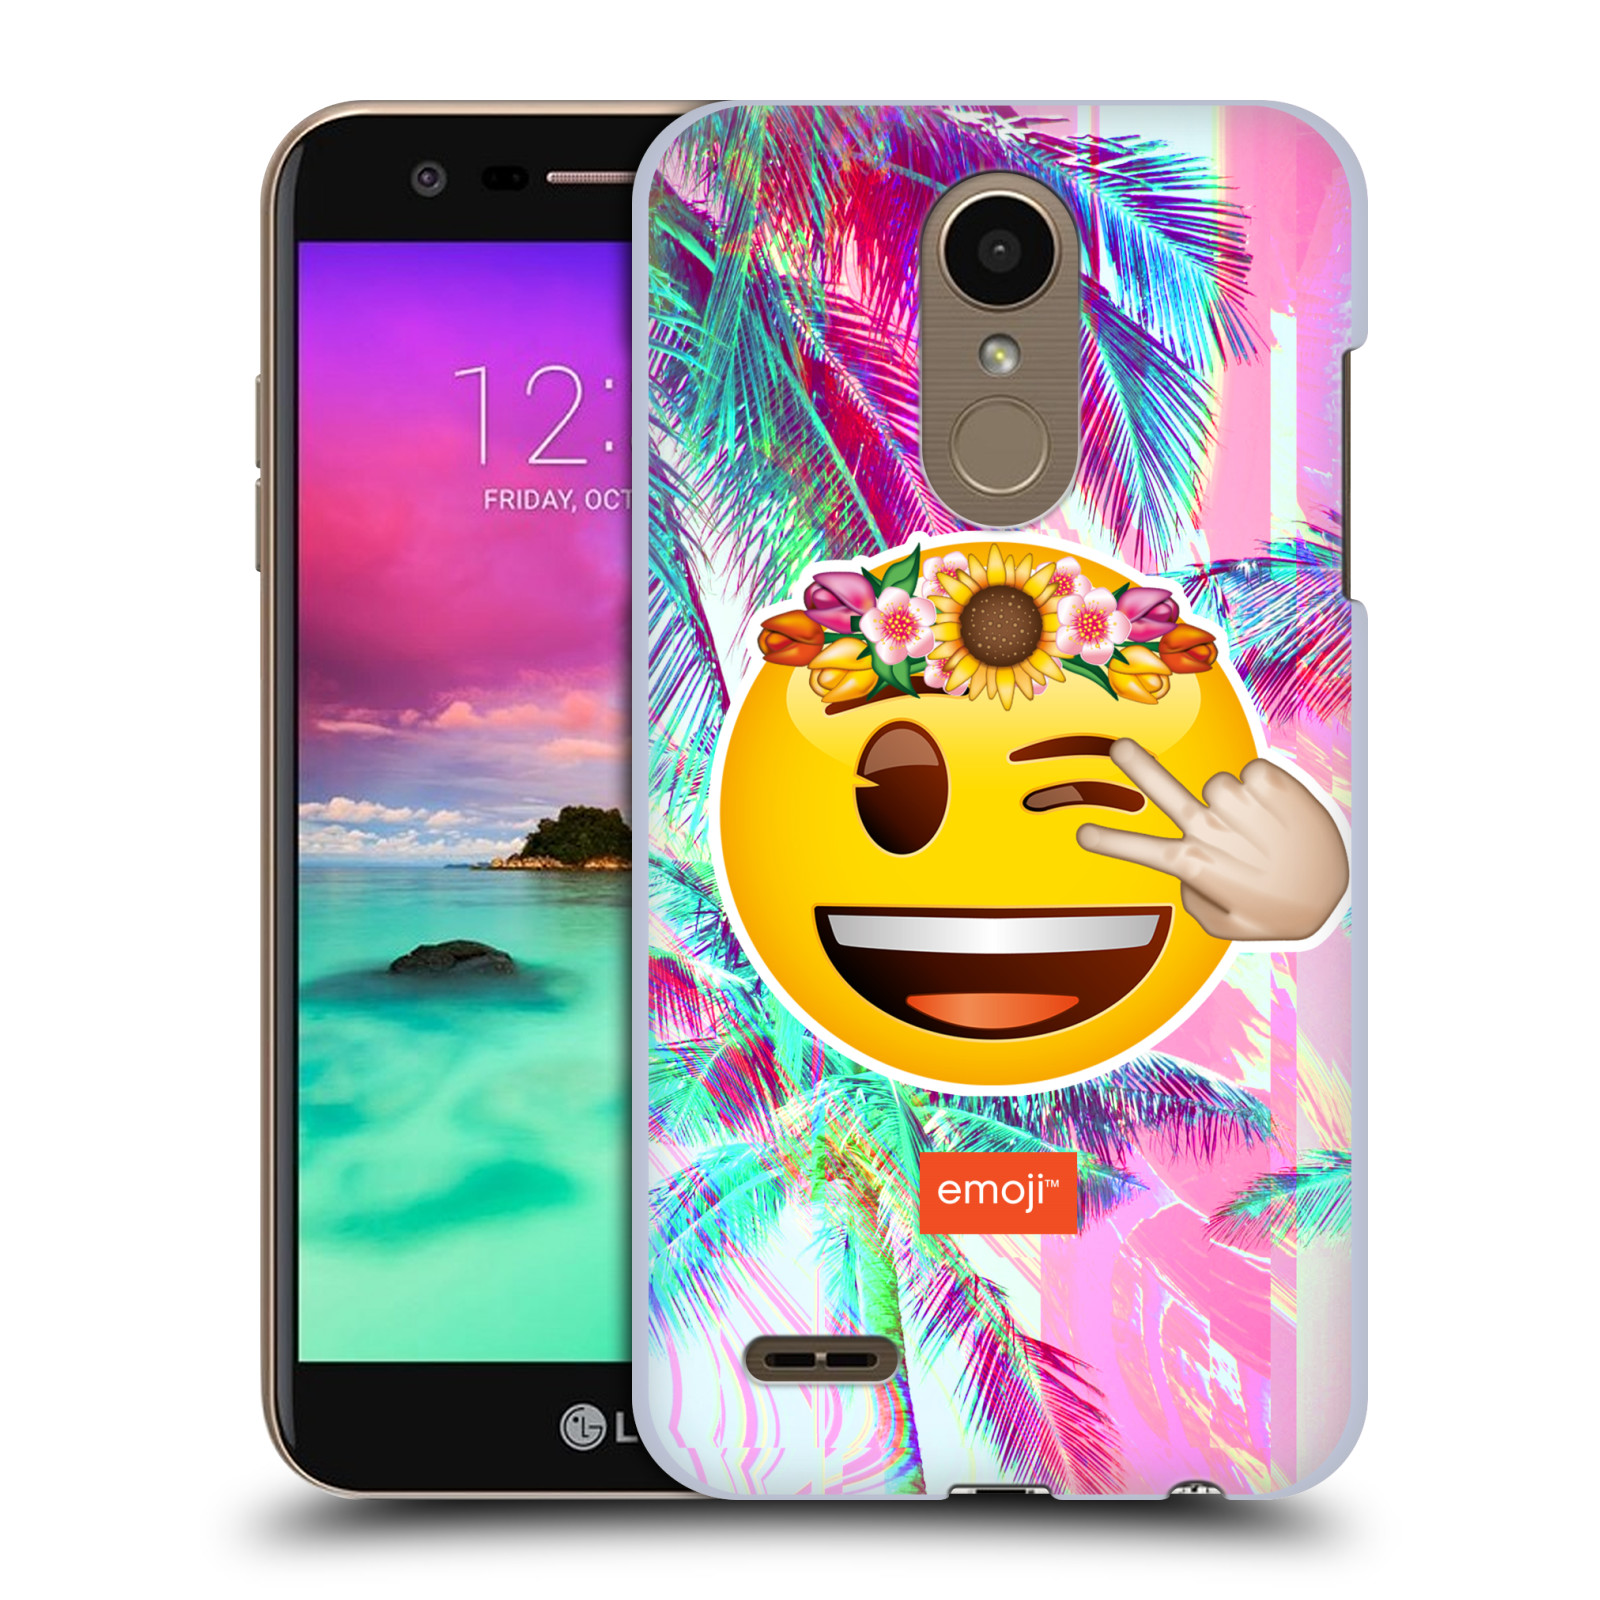 Pouzdro na mobil LG K10 2018 - HEAD CASE - Emoji smajlík palmy a květiny